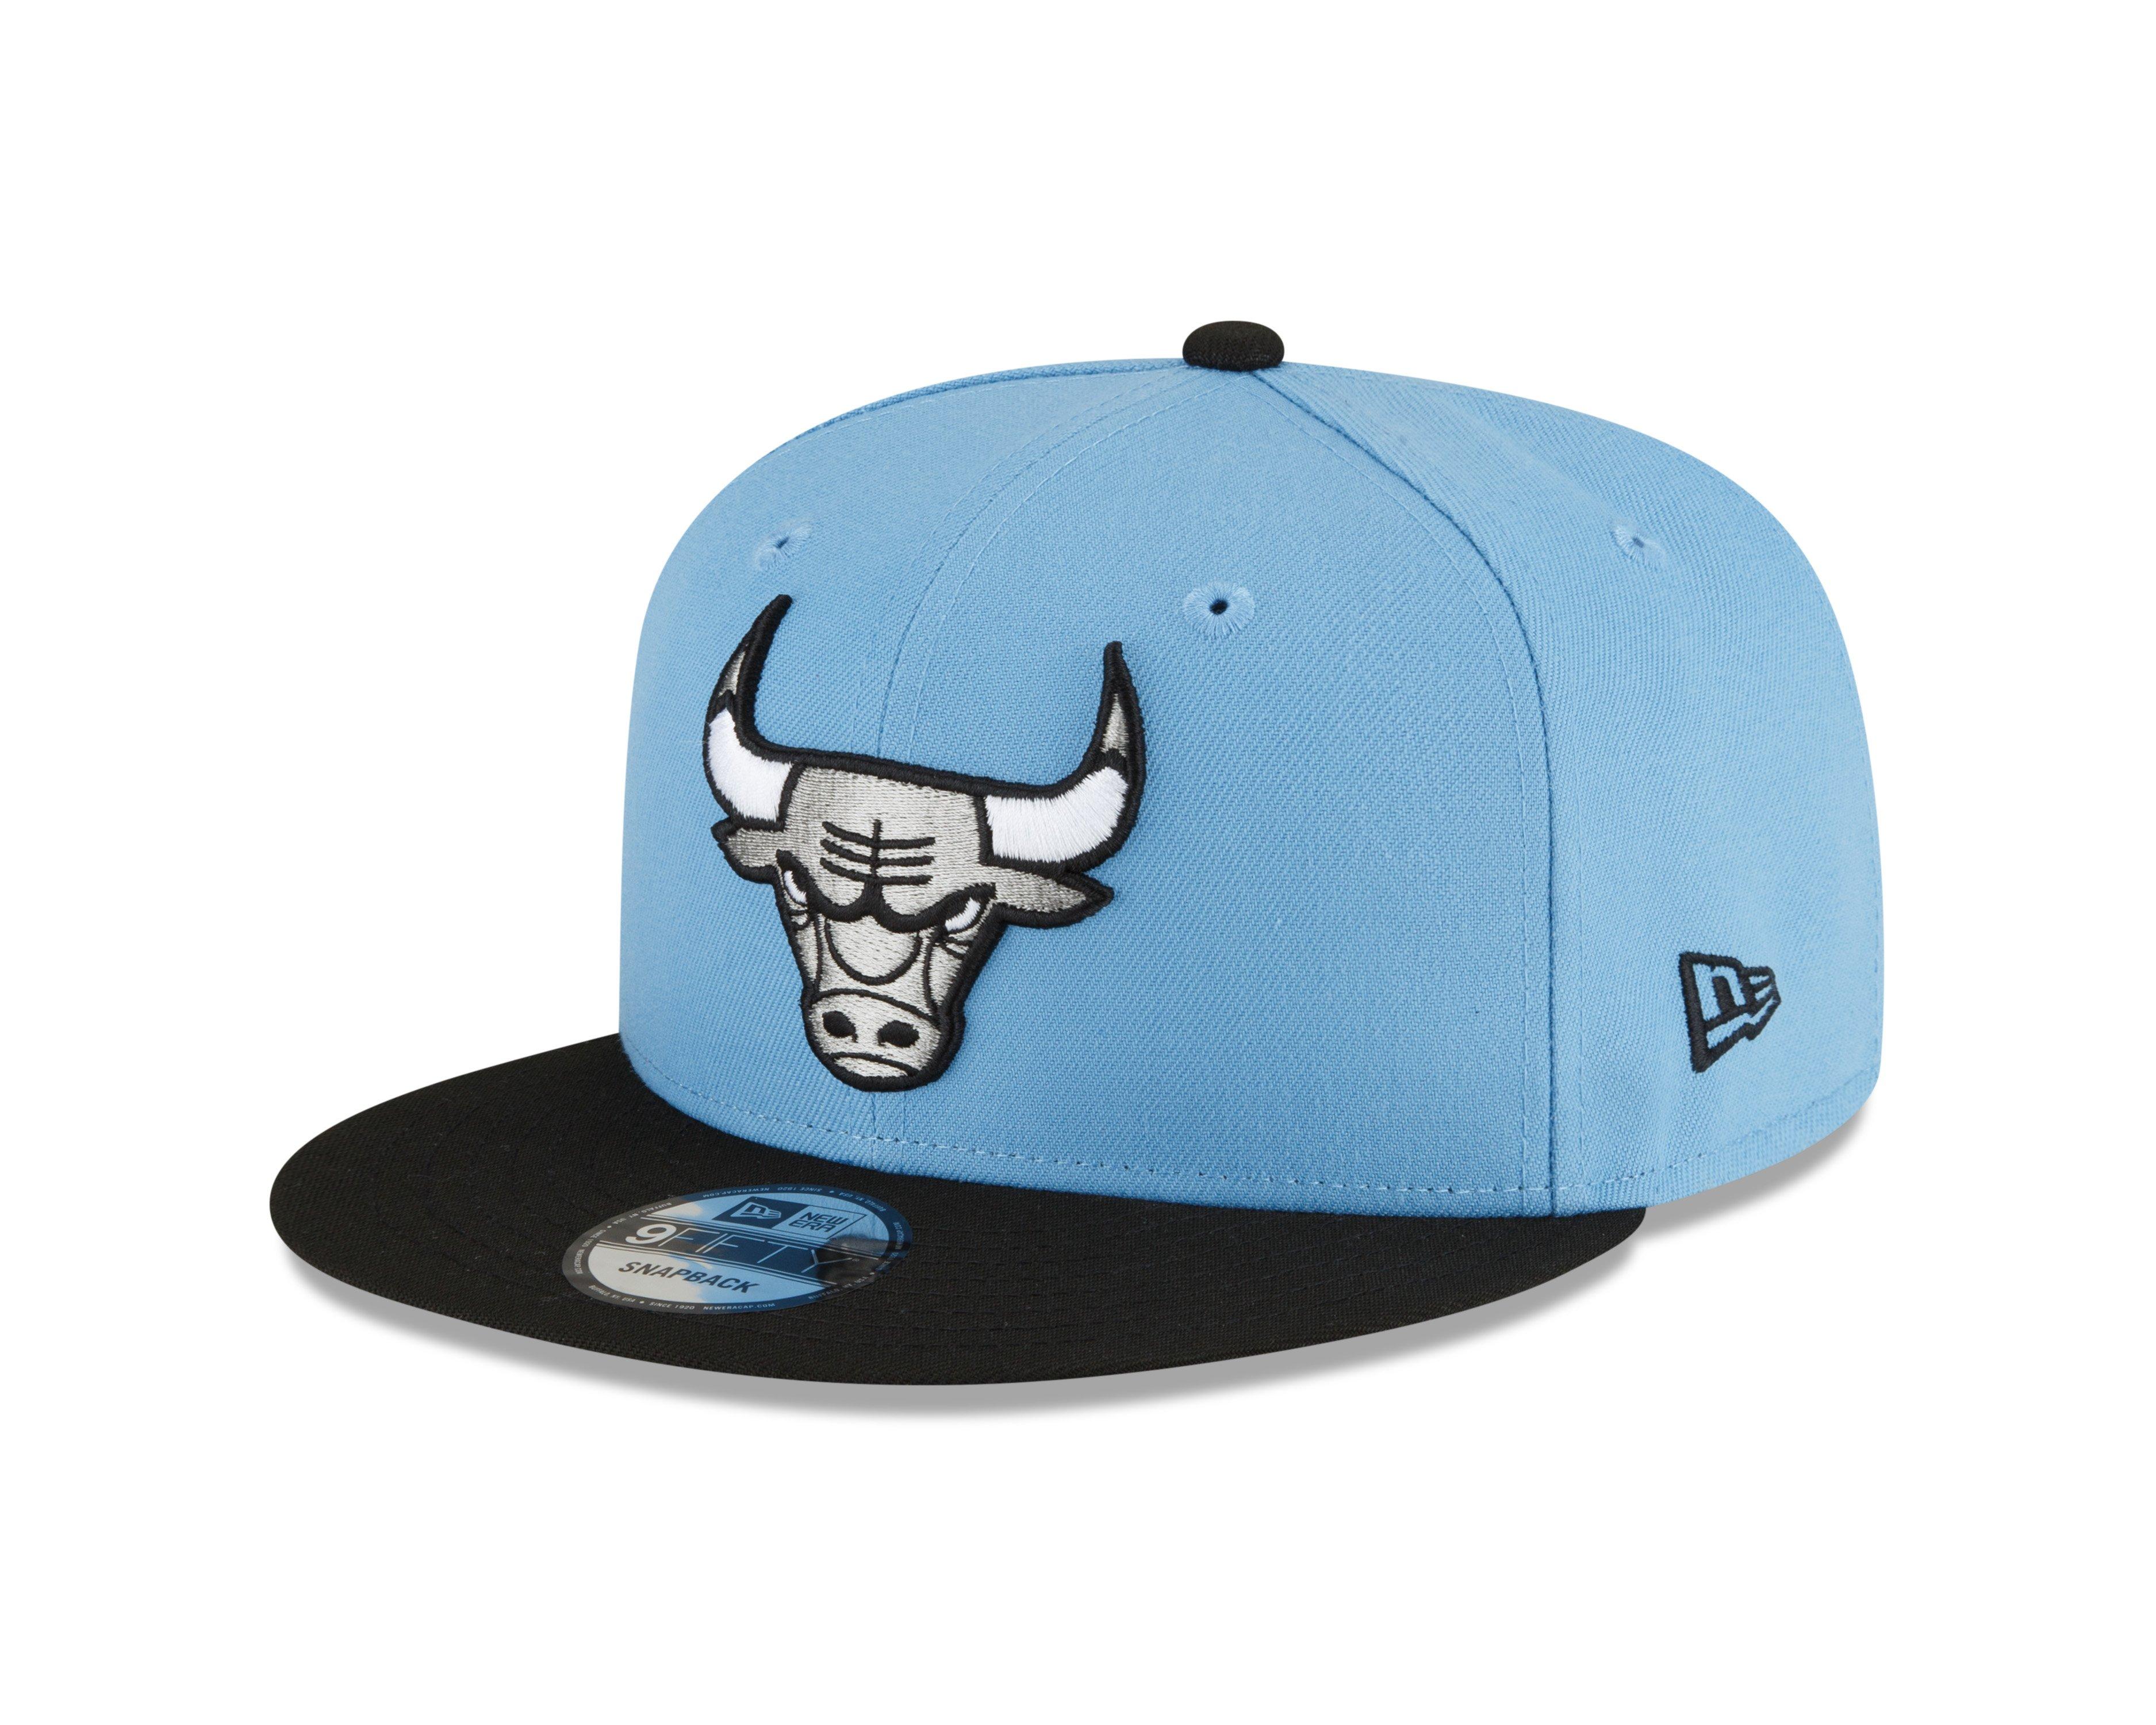 Chicago Bulls Blue Fan Caps & Hats for sale